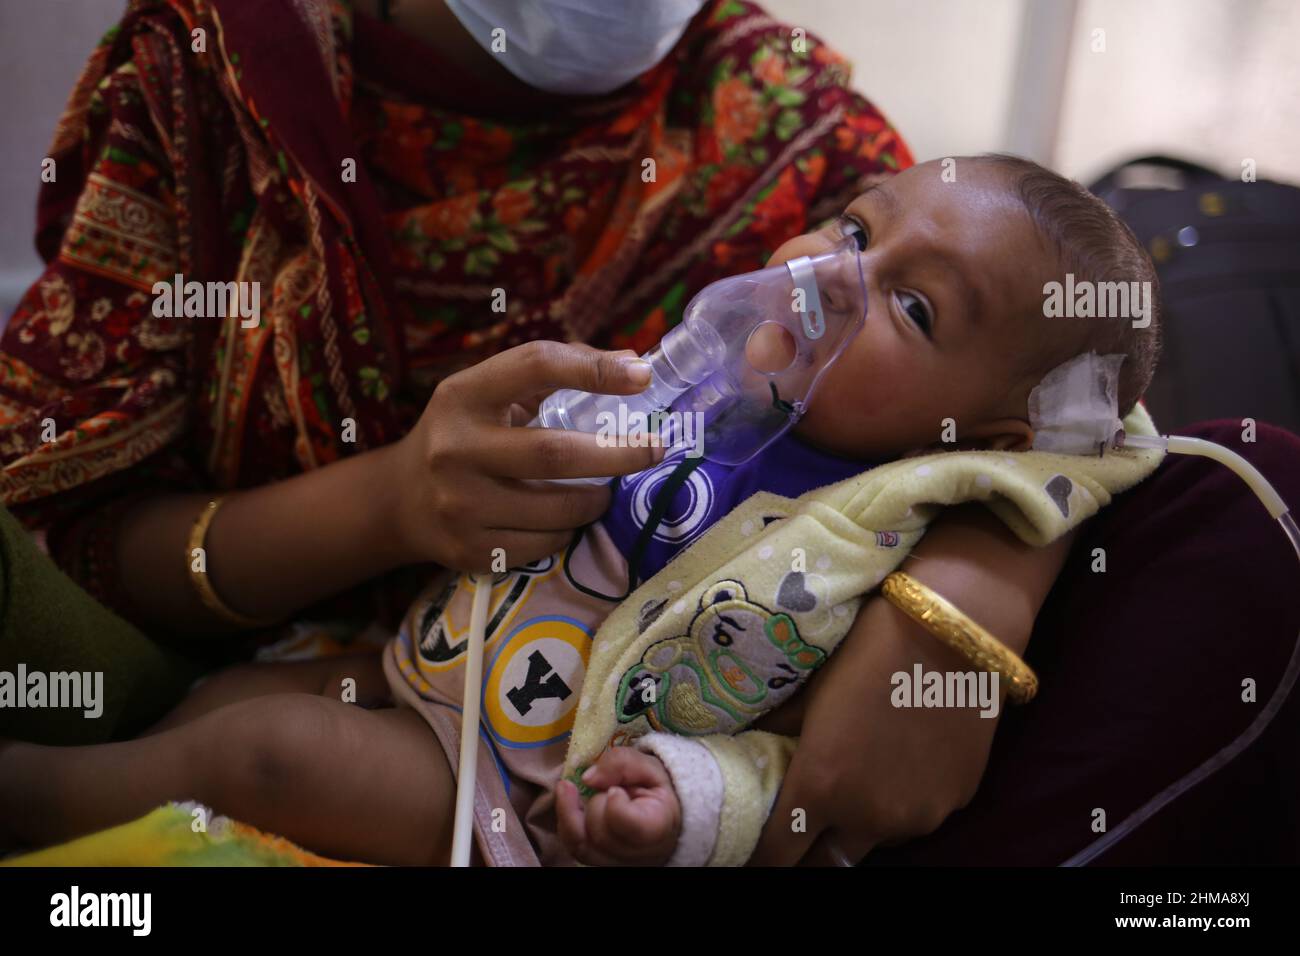 Dhaka, Bangladesh. 8th Feb 2022. Anche se gli effetti dell'infezione da coronavirus nei bambini sono meno dall'inizio, i bambini sono relativamente più colpiti da Omicron varient. Una visita al reparto specializzato del coronavirus dell'ospedale Dhaka Shishu (bambini) nella capitale martedì (febbraio 8th) ha rivelato che la maggior parte dei bambini ammessi erano sotto i 5 anni di età. La maggior parte di questi bambini è in condizioni lievi. Tuttavia, alcune persone sono state date ossigeno a causa della mancanza di respiro. (Credit Image: © Md. Rakibul Hasan/ZUMA Press Wire) Foto Stock